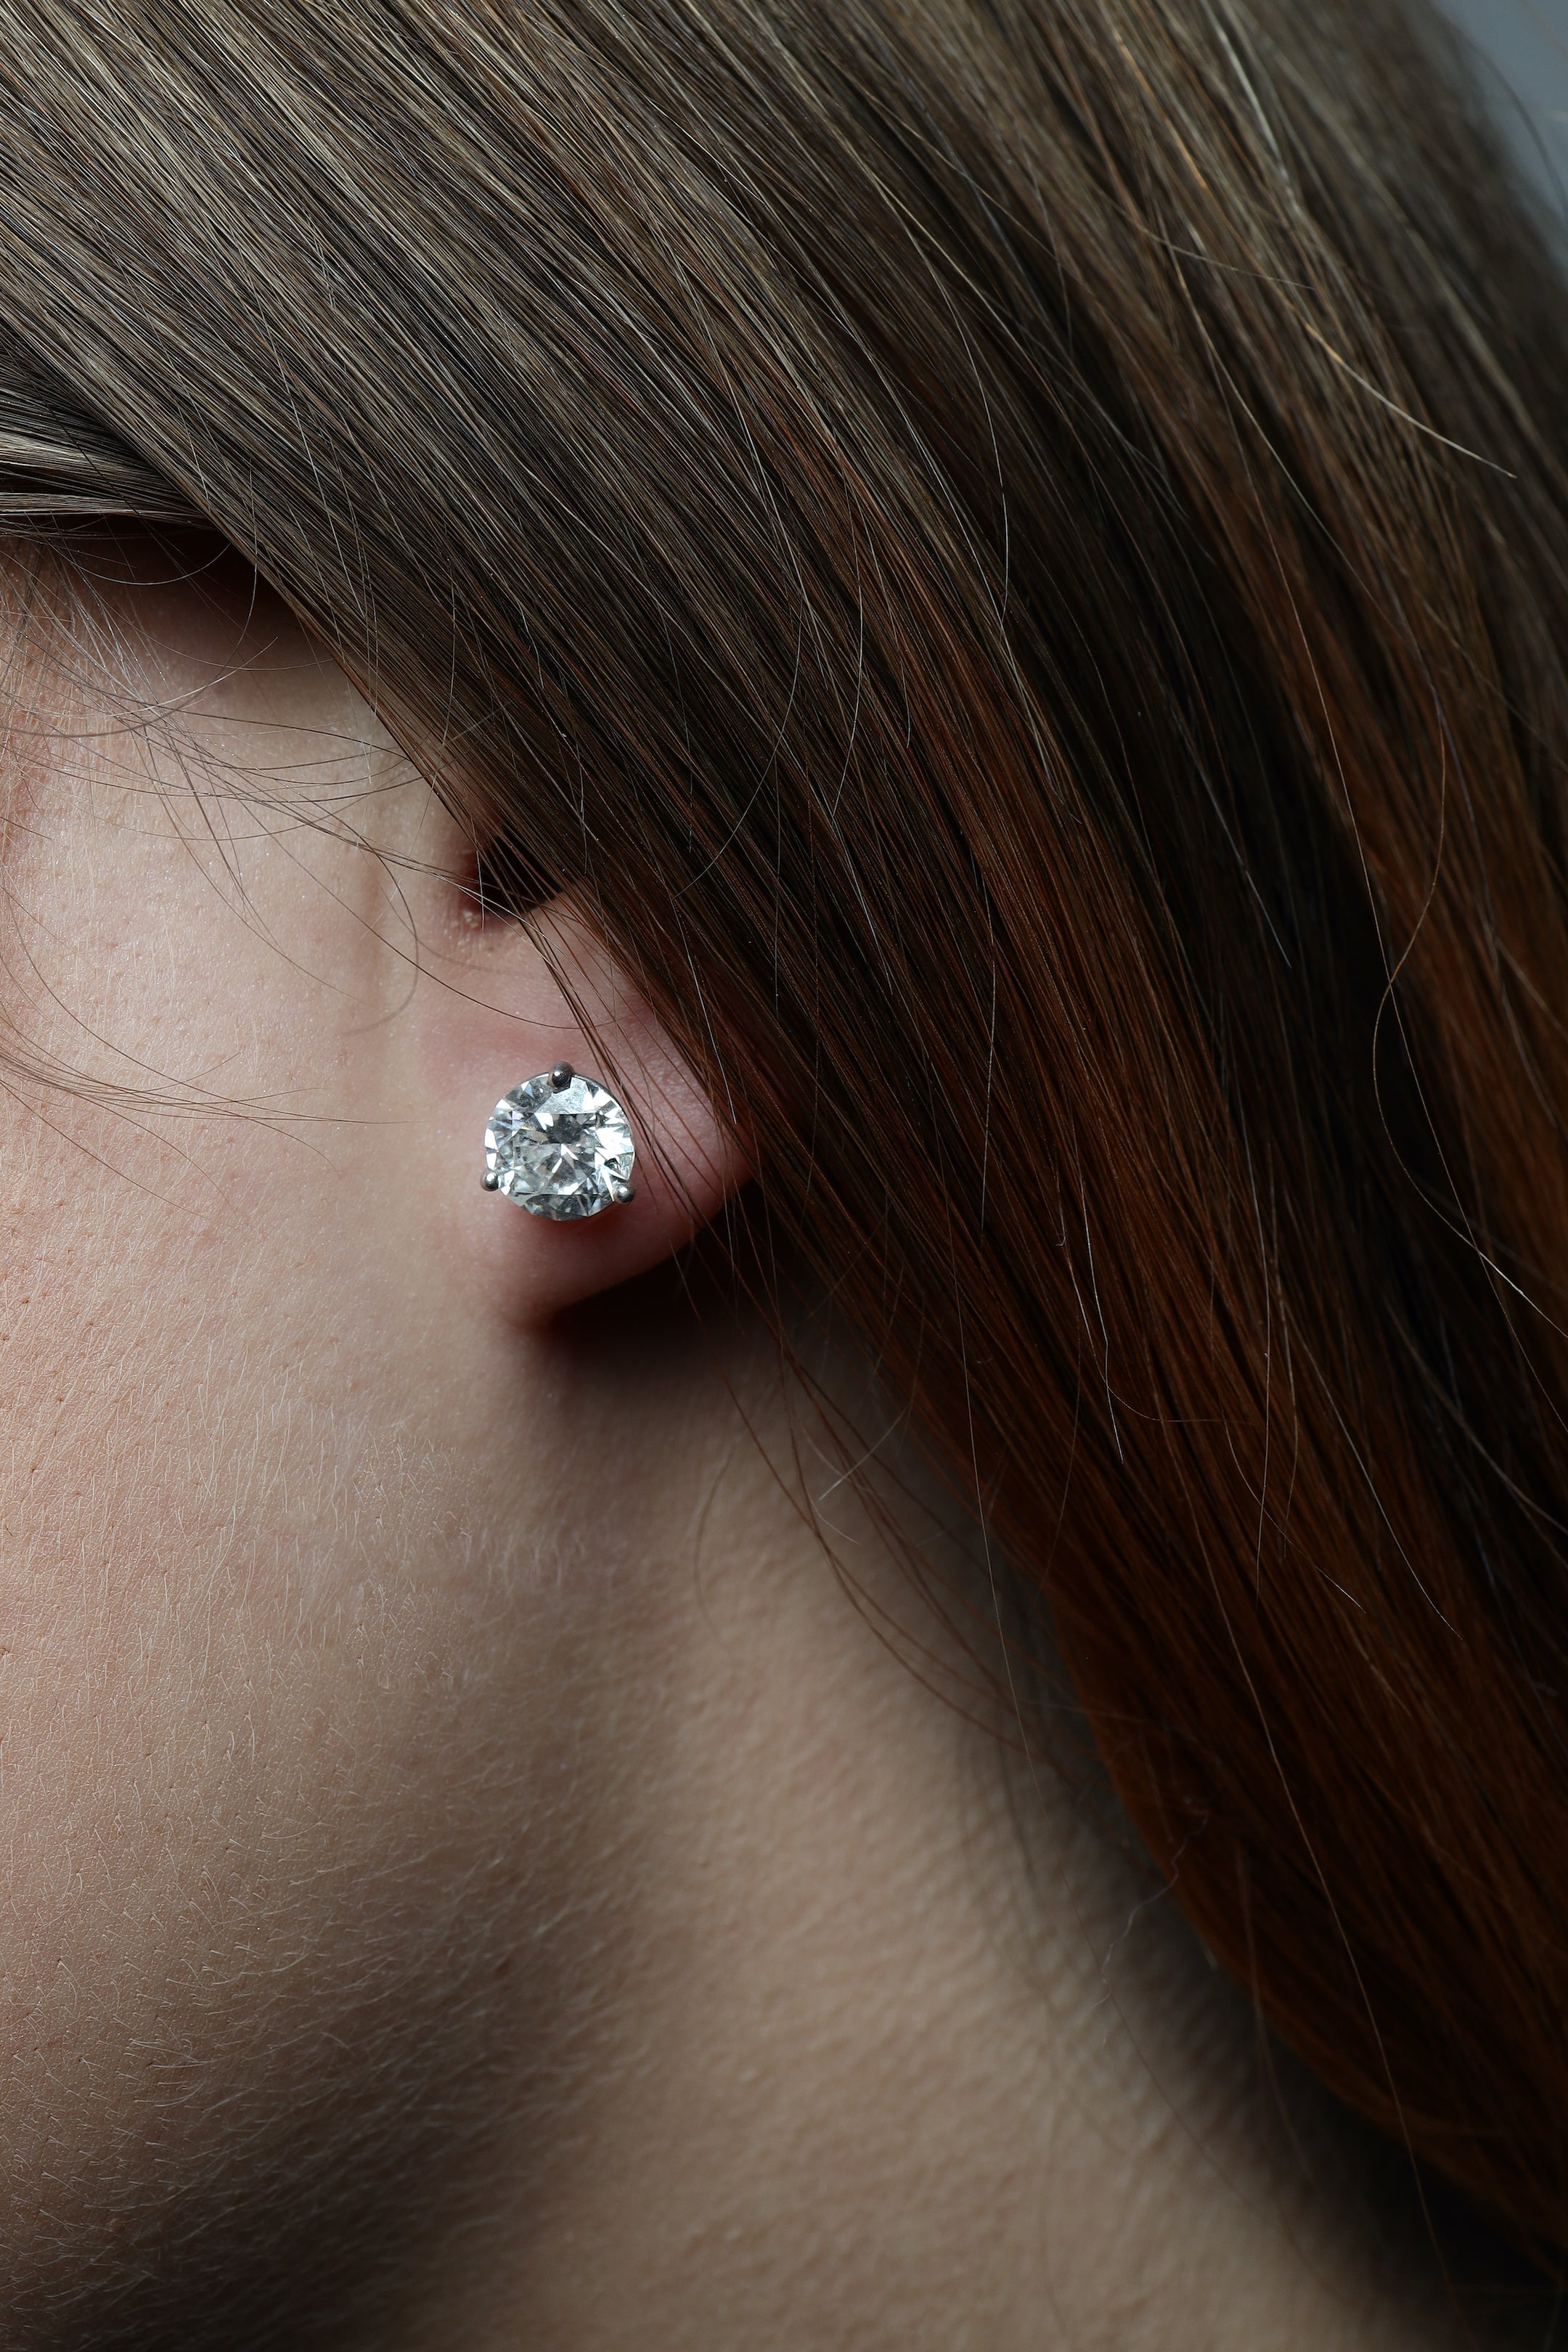 2 ctw Lab Grown Diamond Stud Earrings